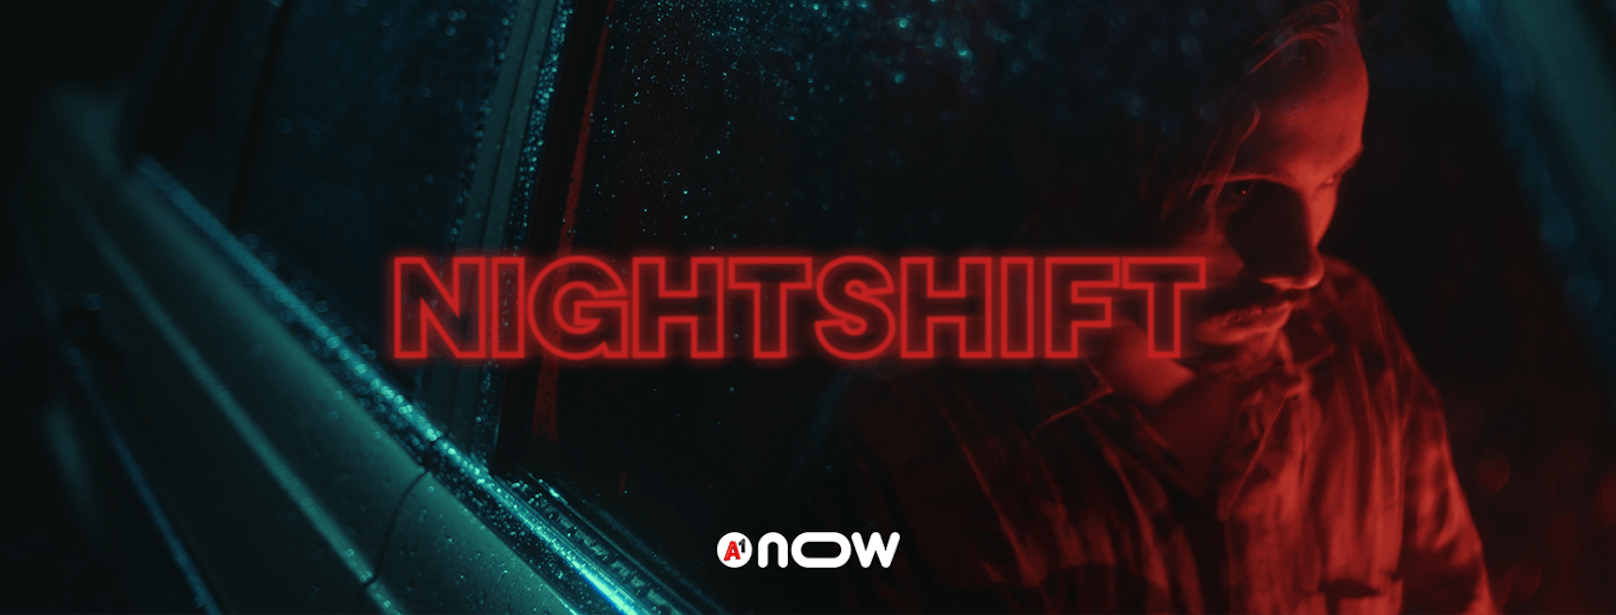 A1now präsentiert erste Spielfilmproduktion "Nightshift".